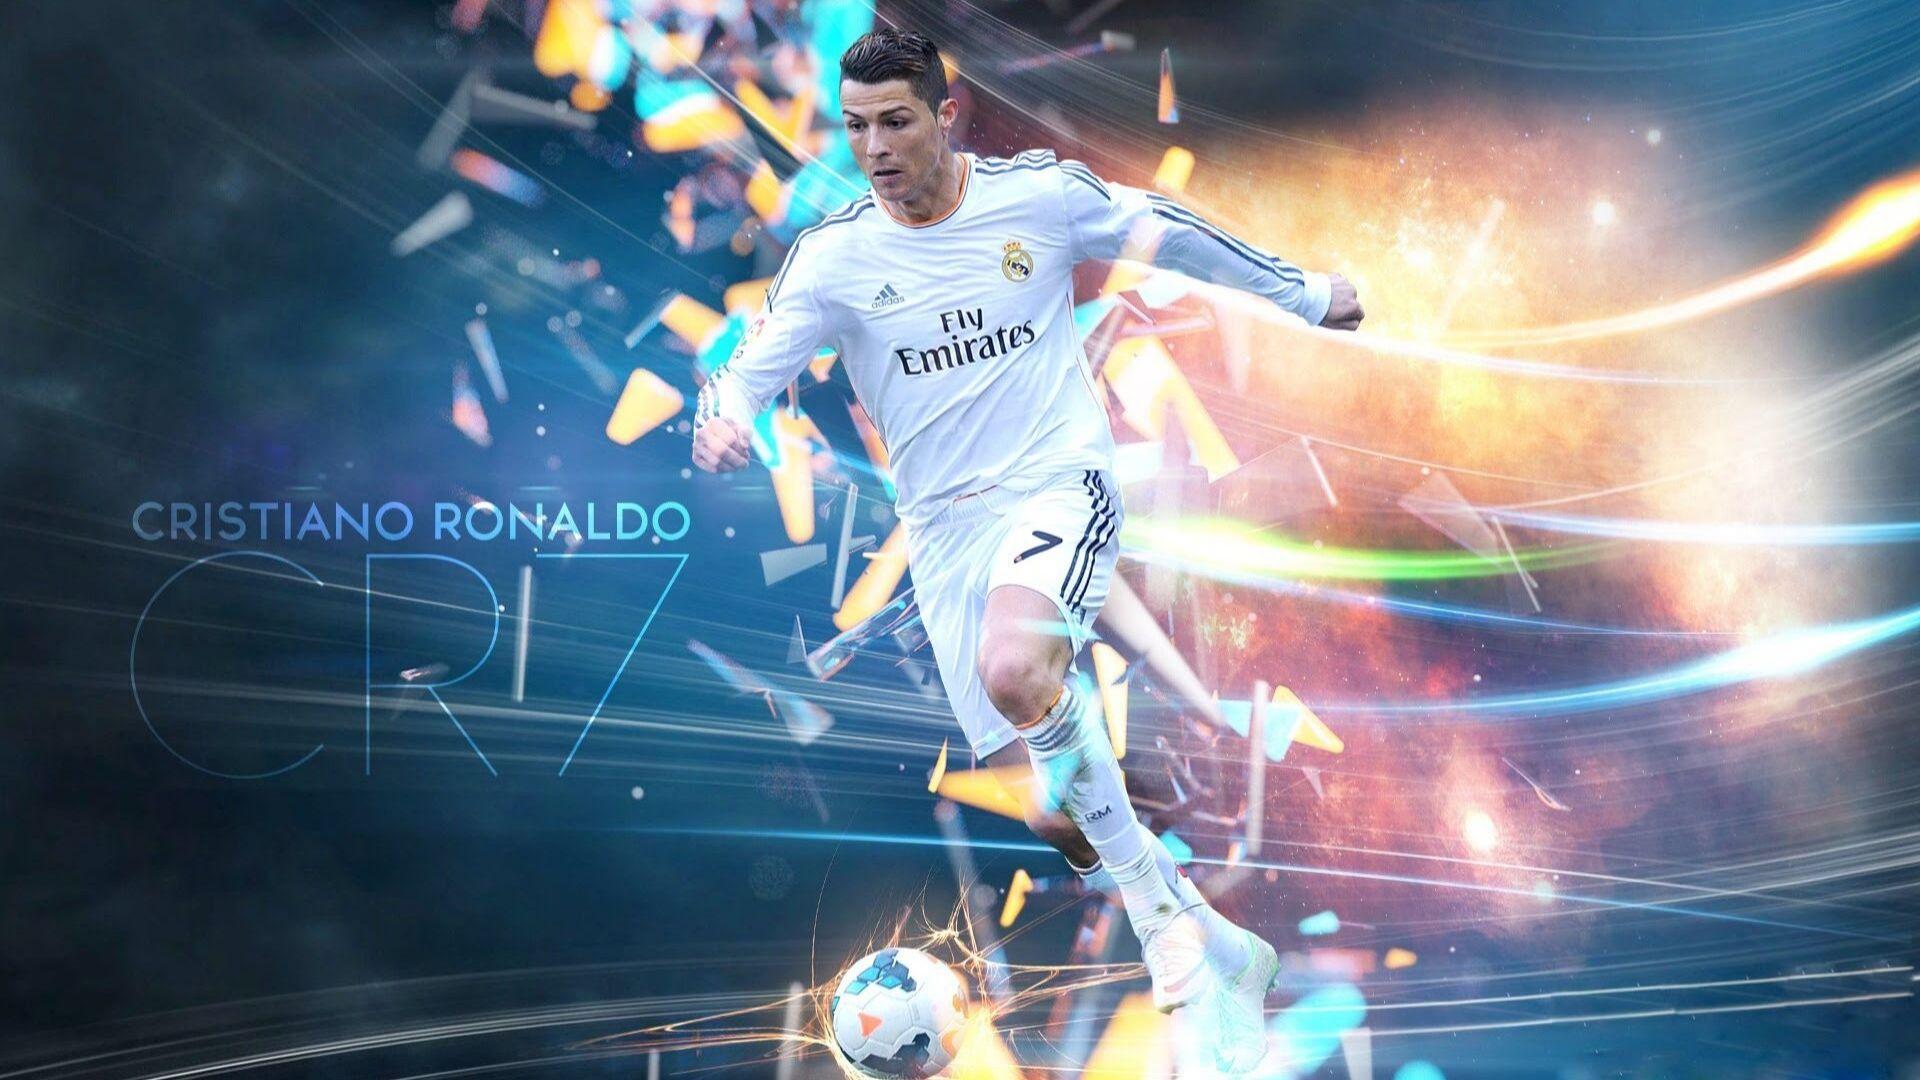 Ronaldo wallpaper full HD 1080p download free